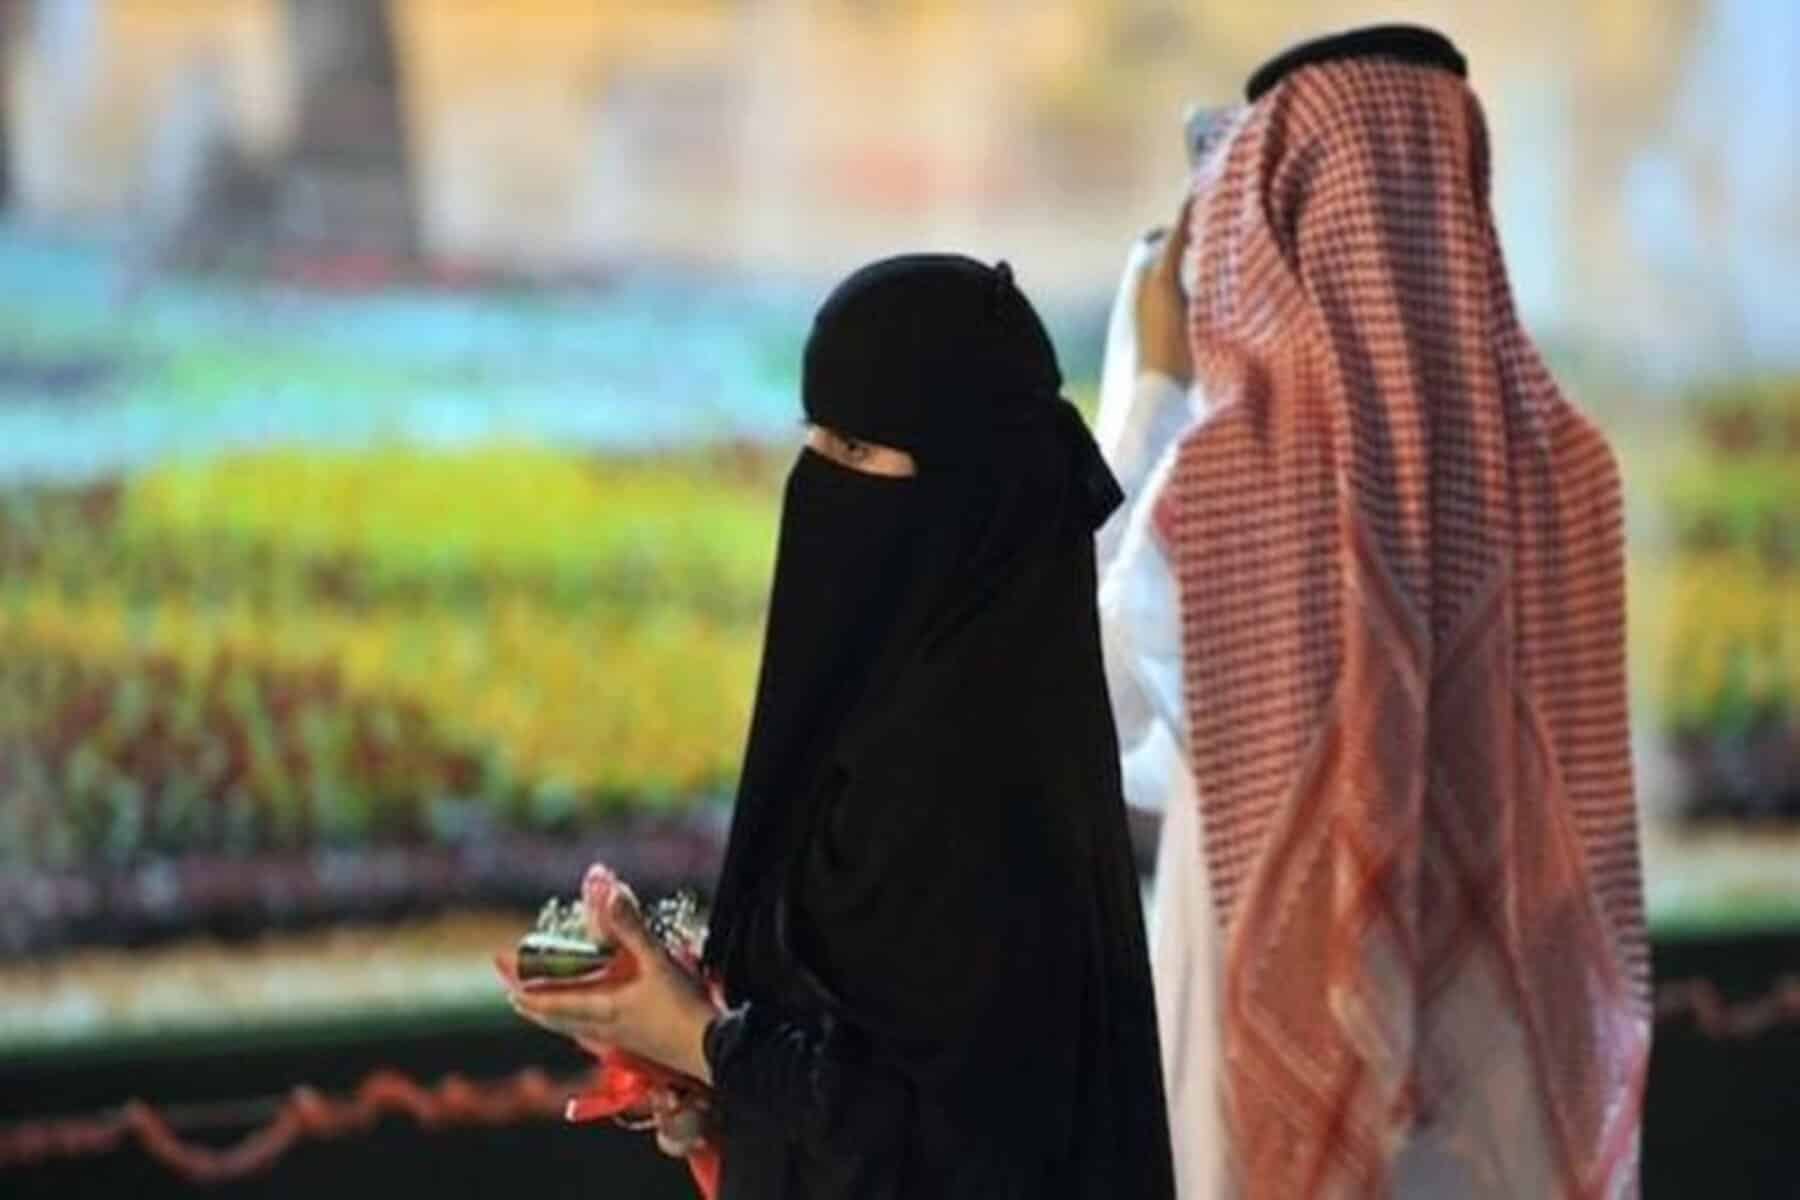  alarabtrend.com ردة فعل زوجة سعودية